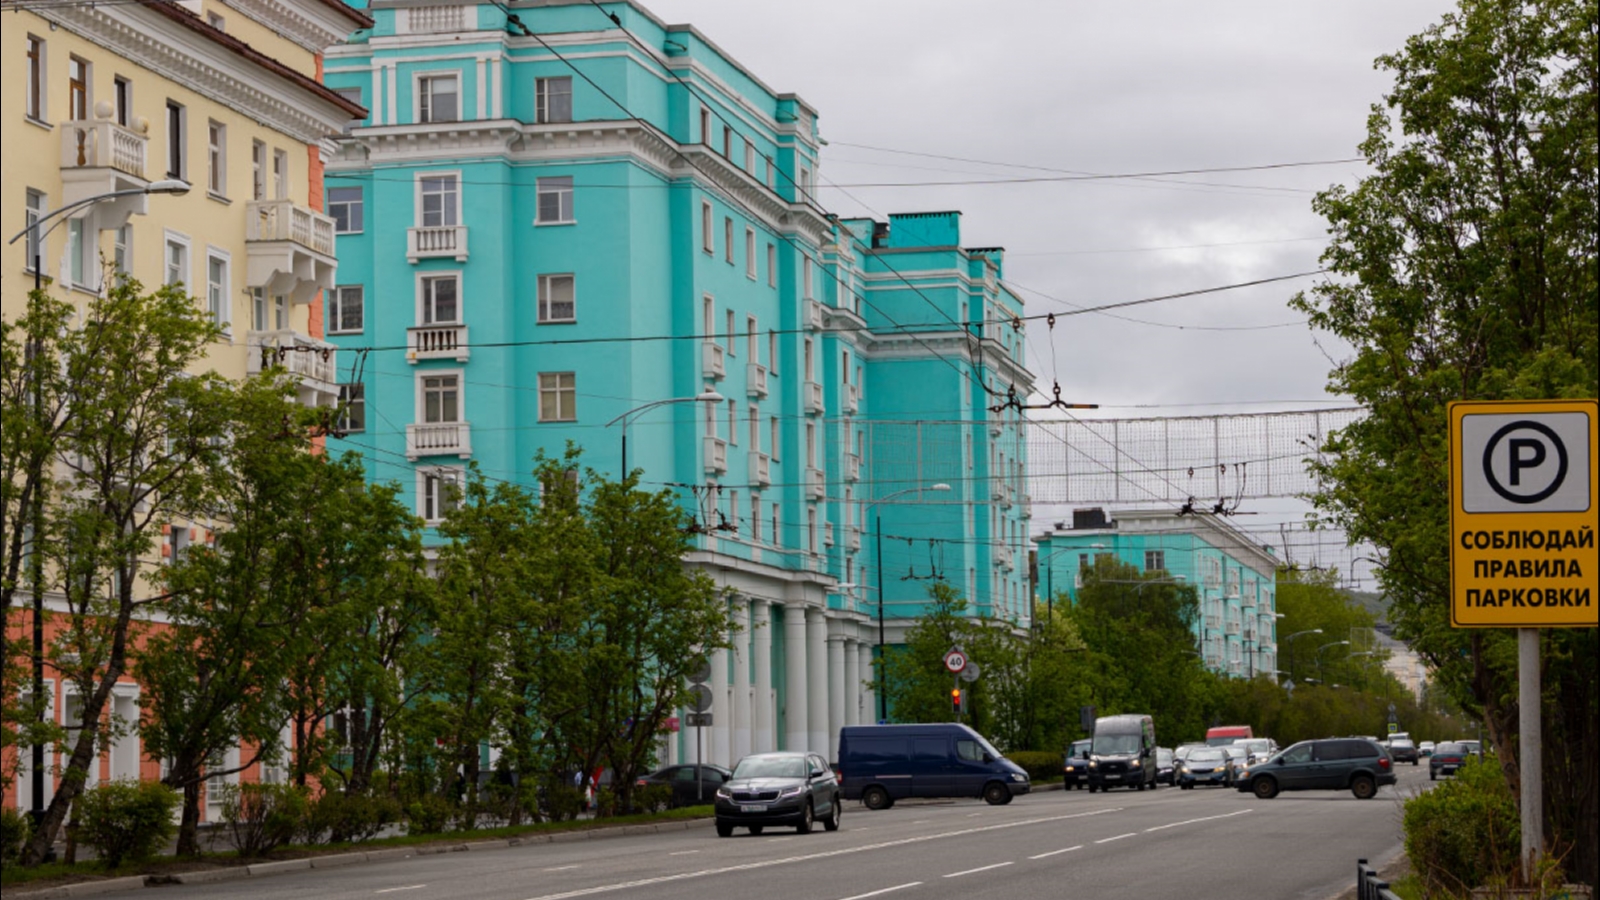 За год в Мурманске было совершено свыше 120 актов вандализма